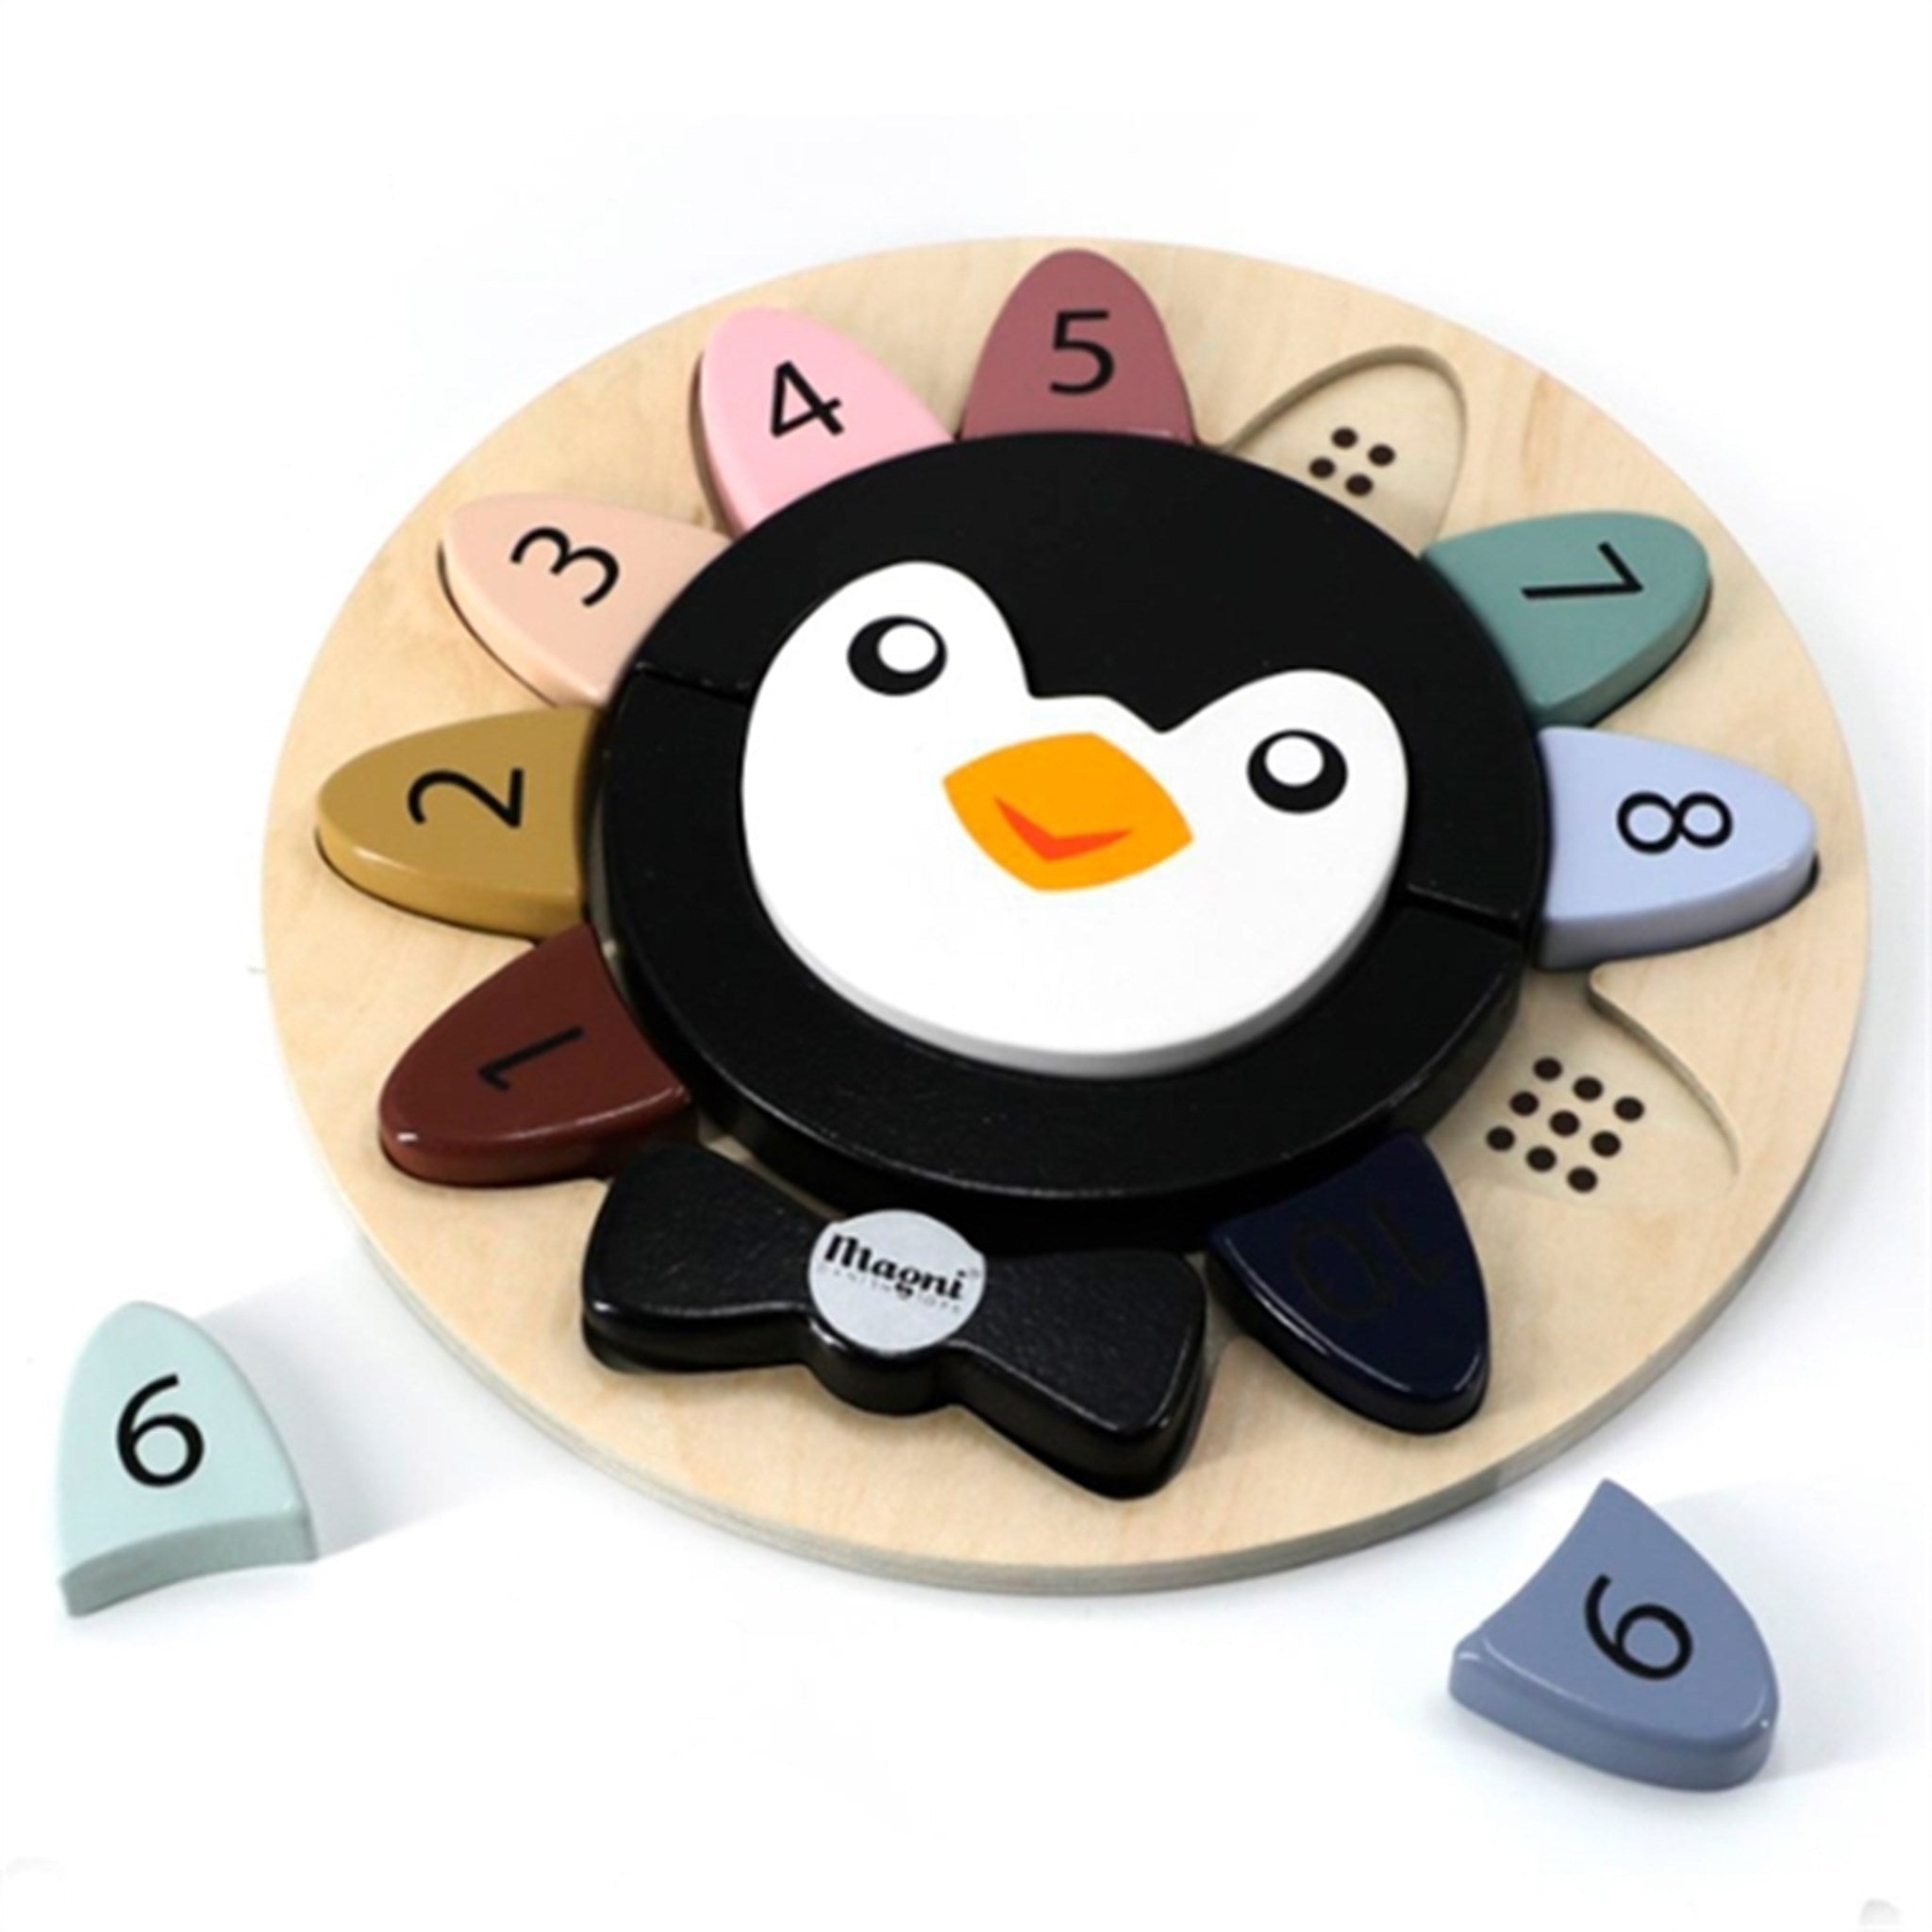 Magni Pingvin Puzzle Game